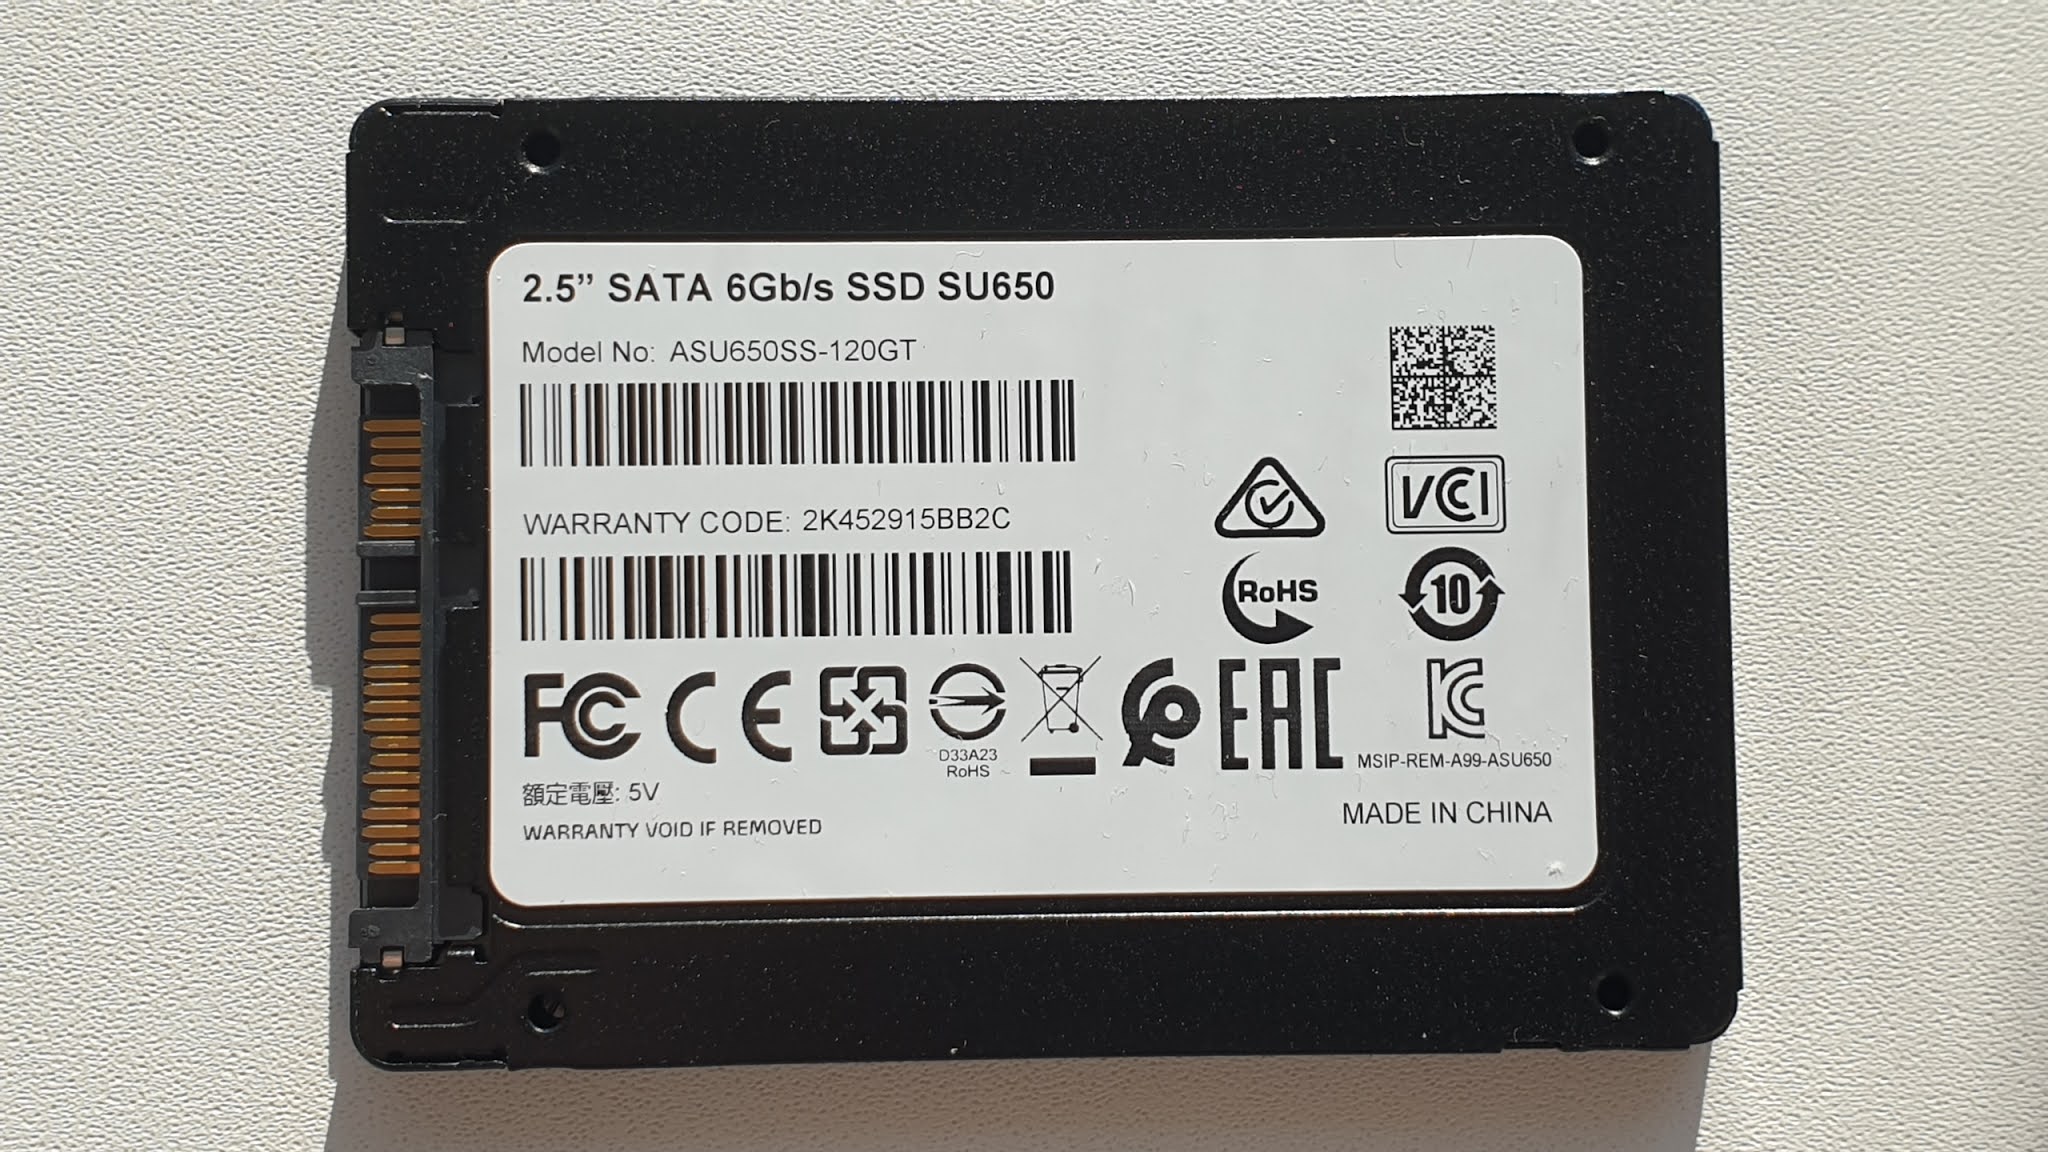 650 su. Asu650ss-120gt. Asu650ss-480gt-r. A-data SSD 120gb su650 asu650ss-120gt-r {SATA3.0}. 2.5 SATA 6 GB/S SSD su650.